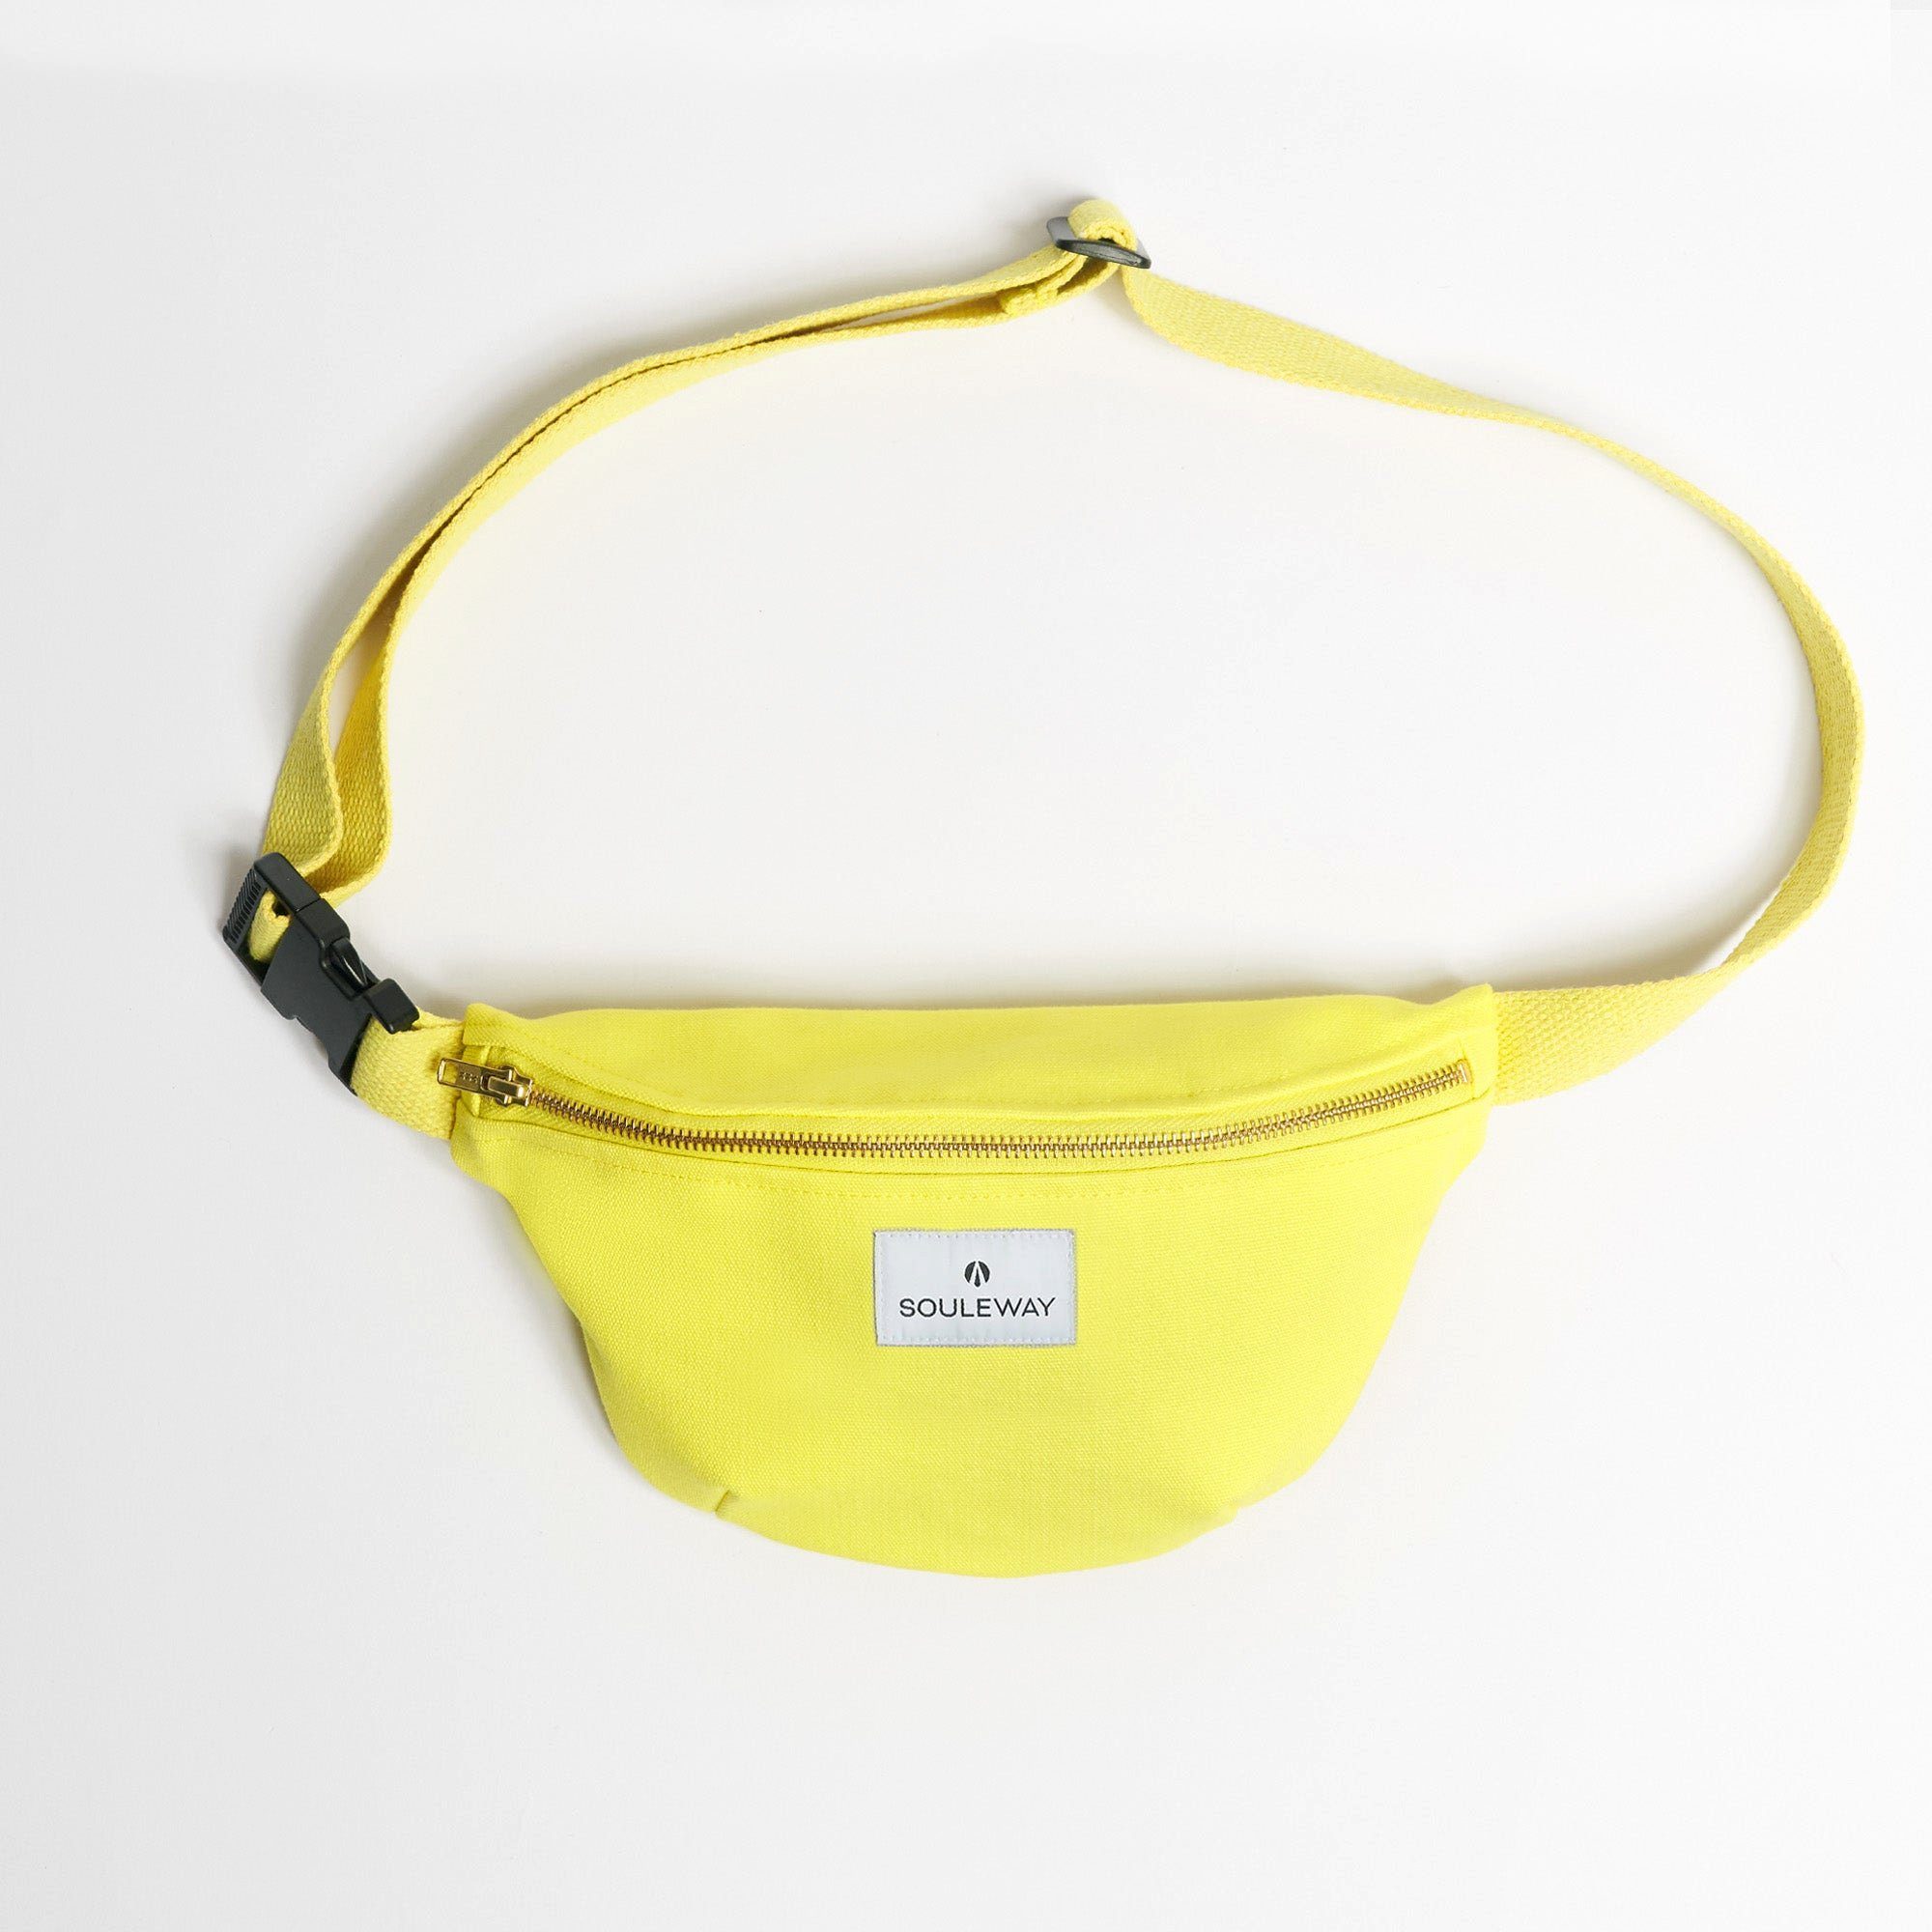 Bright Souleway Bauchtasche Lemon Bag Bum